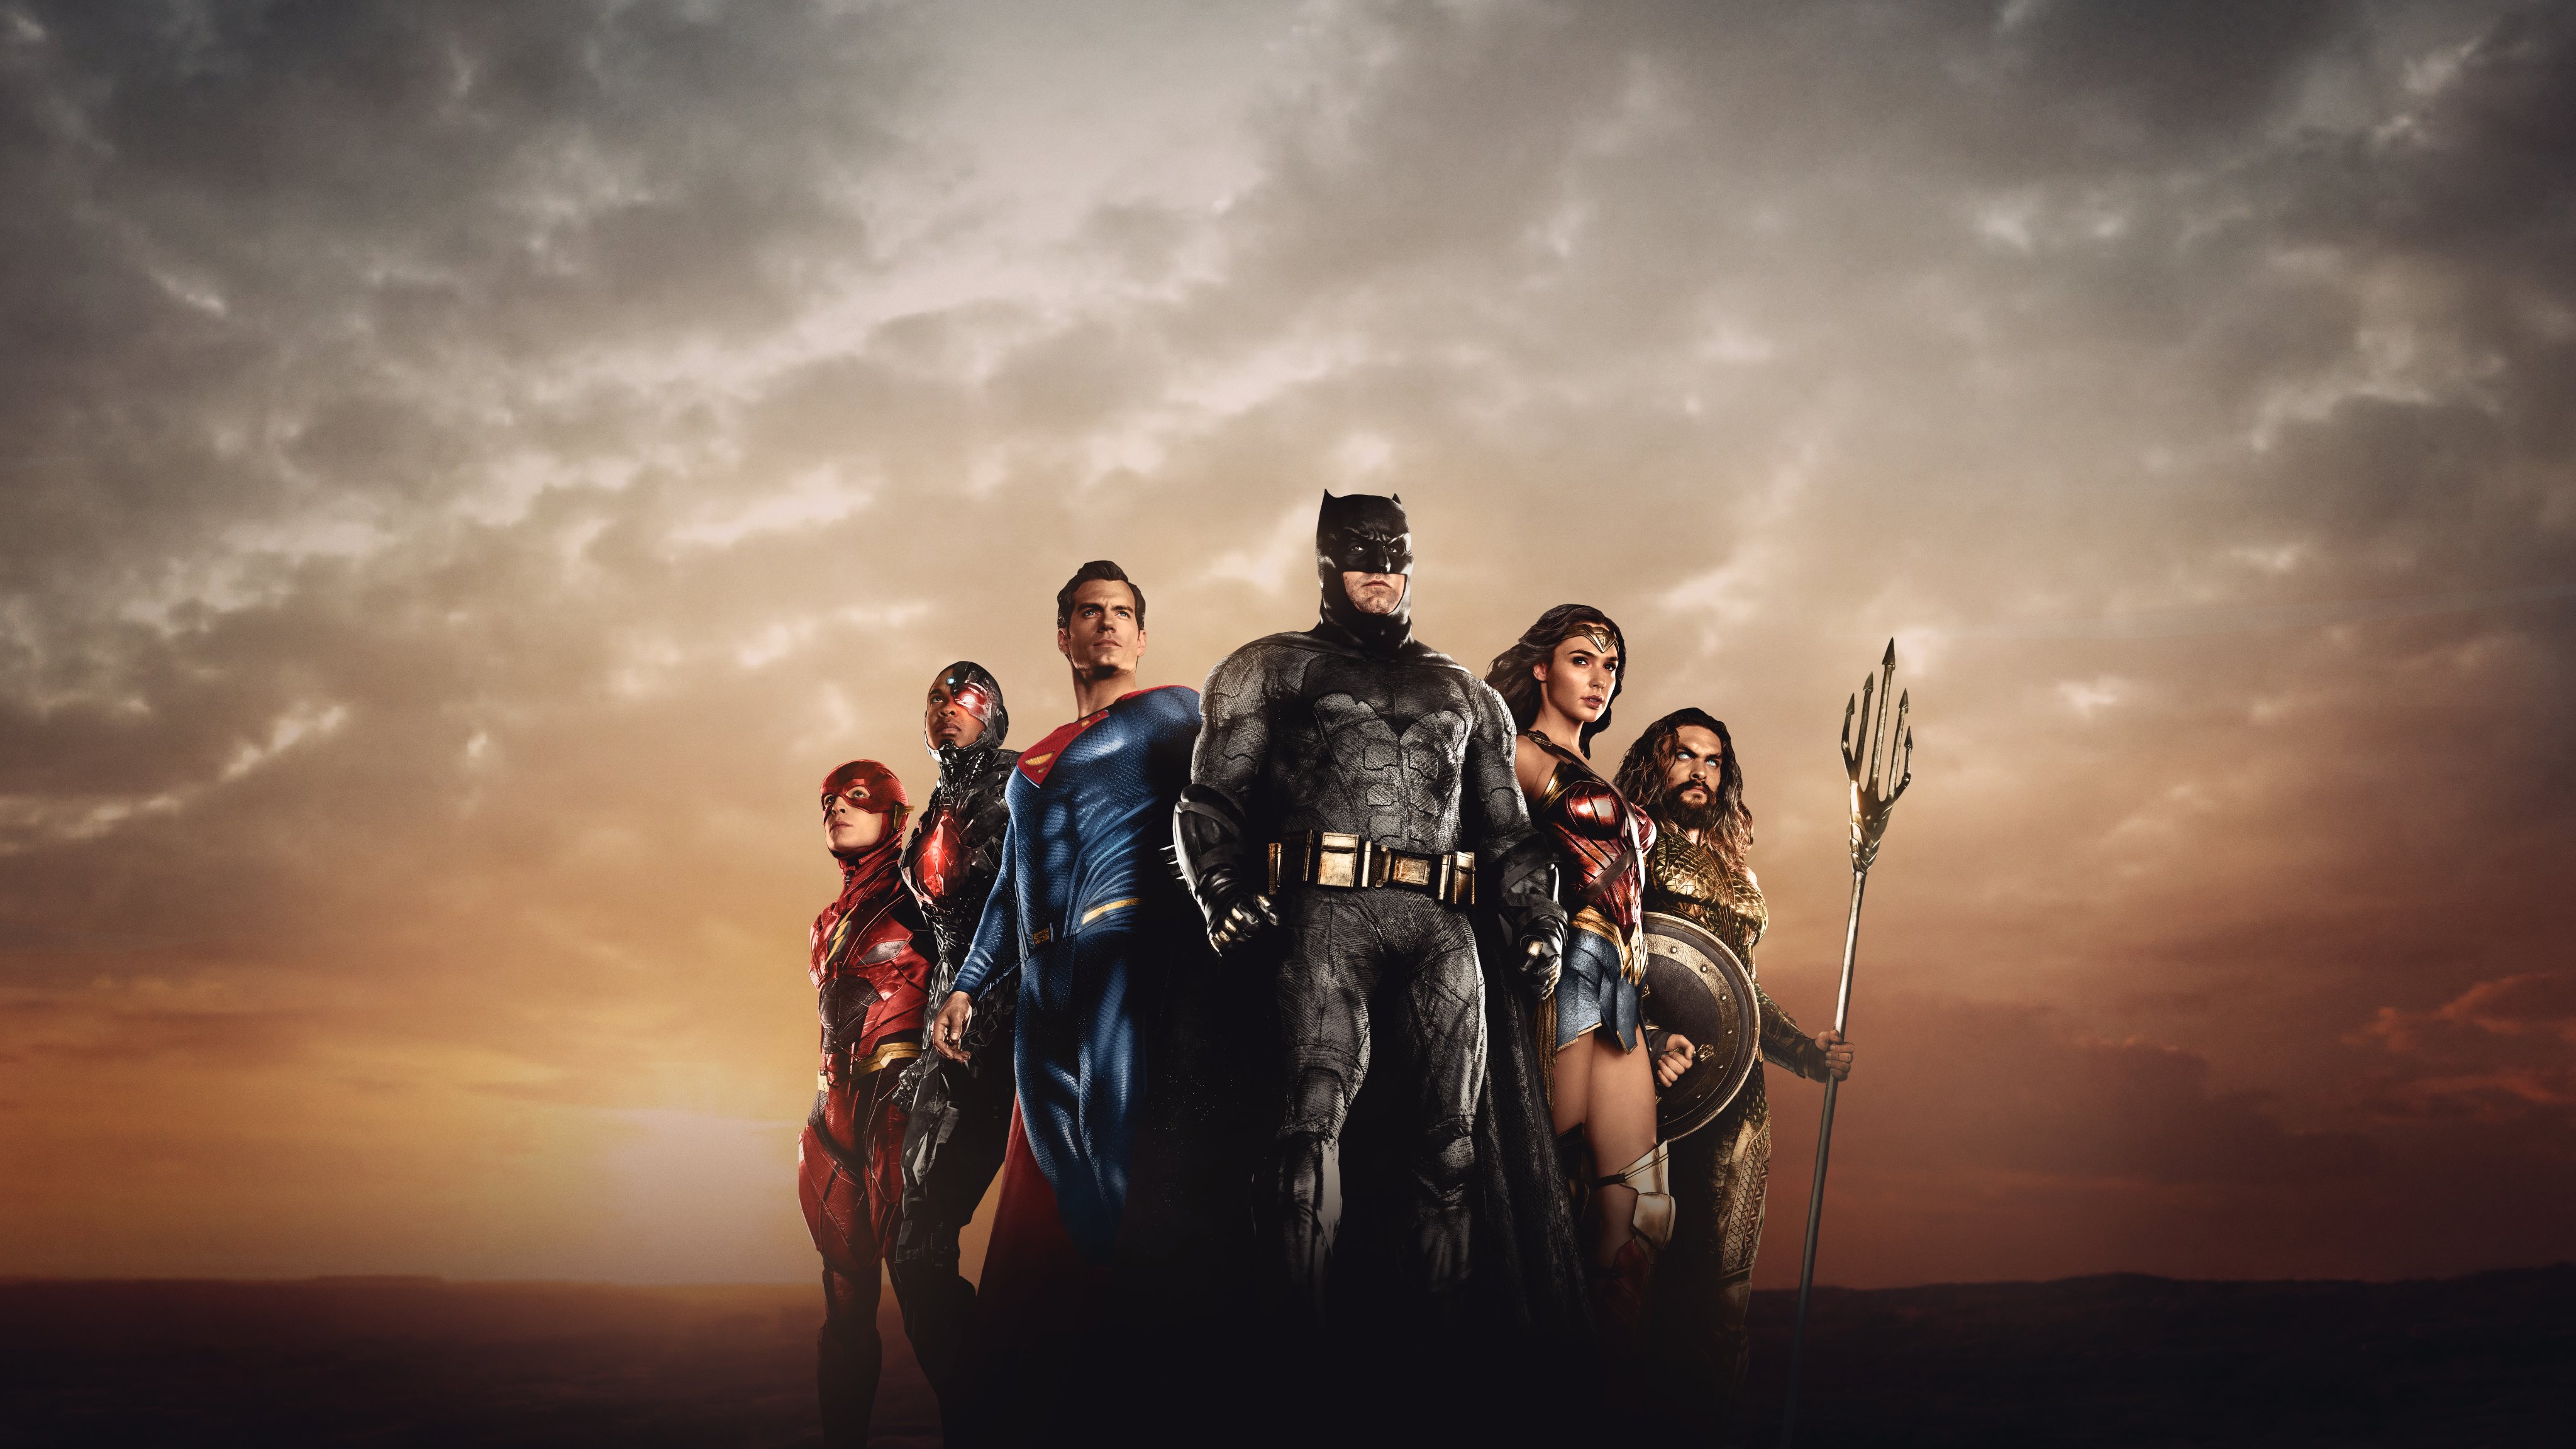 zack snyder's justice league, superman, aquaman, movie, barry allen, batman, cyborg (dc comics), dc comics, diana prince, flash, justice league, wonder woman